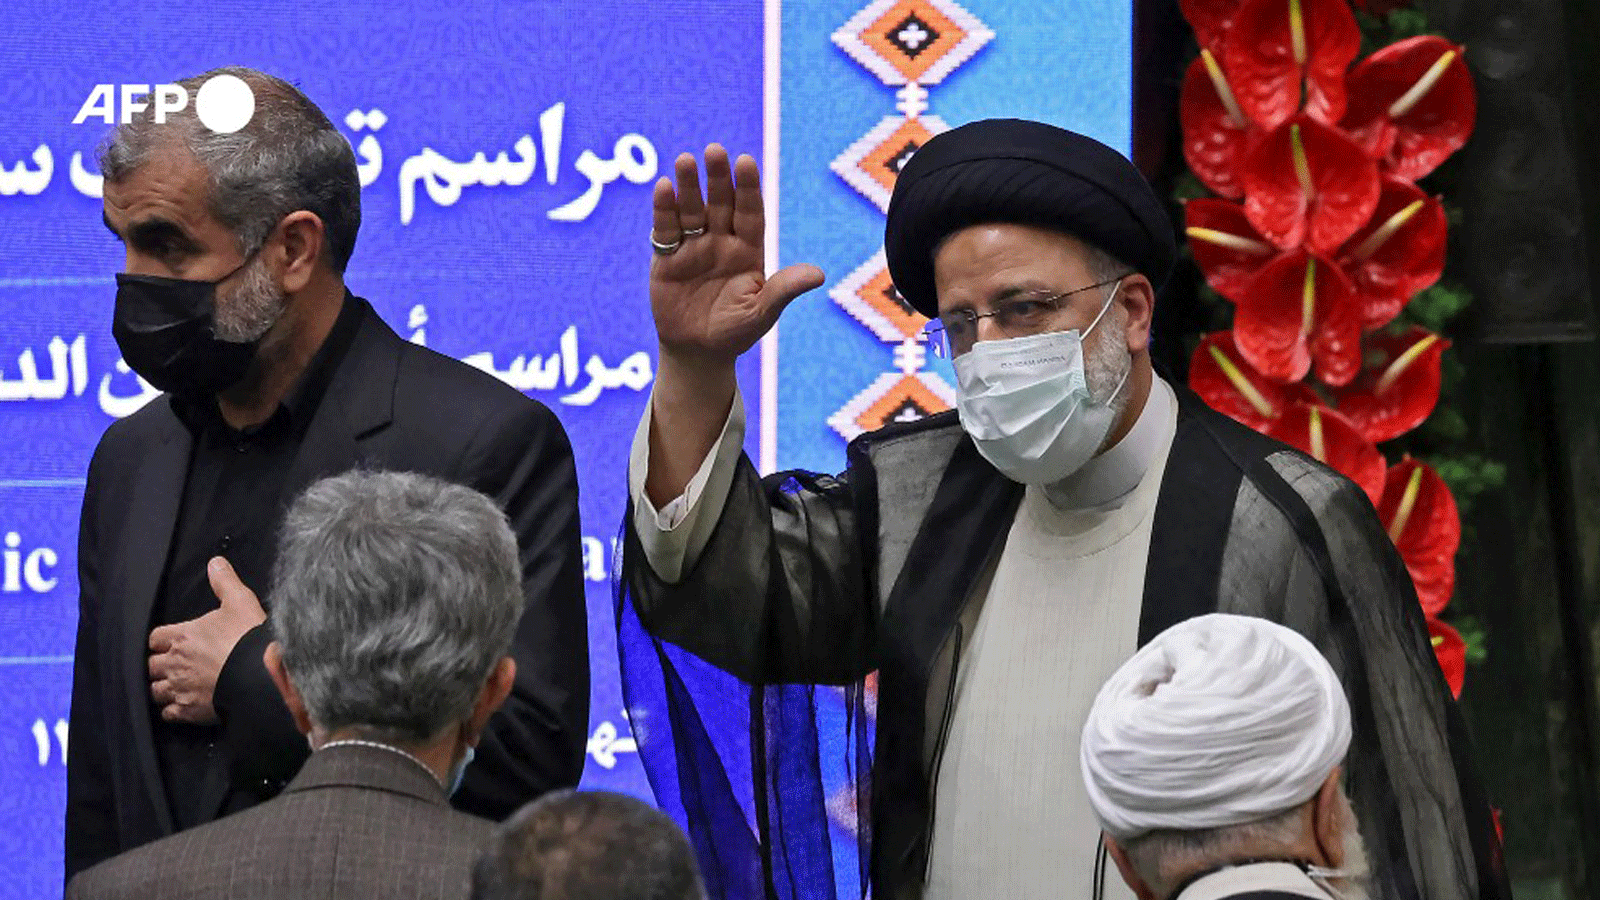 رجل الدين الإيراني إبراهيم رئيسي يؤدي اليمين كرئيس ثامن للجمهورية الإسلامية 5 آب/أغسطس 2021